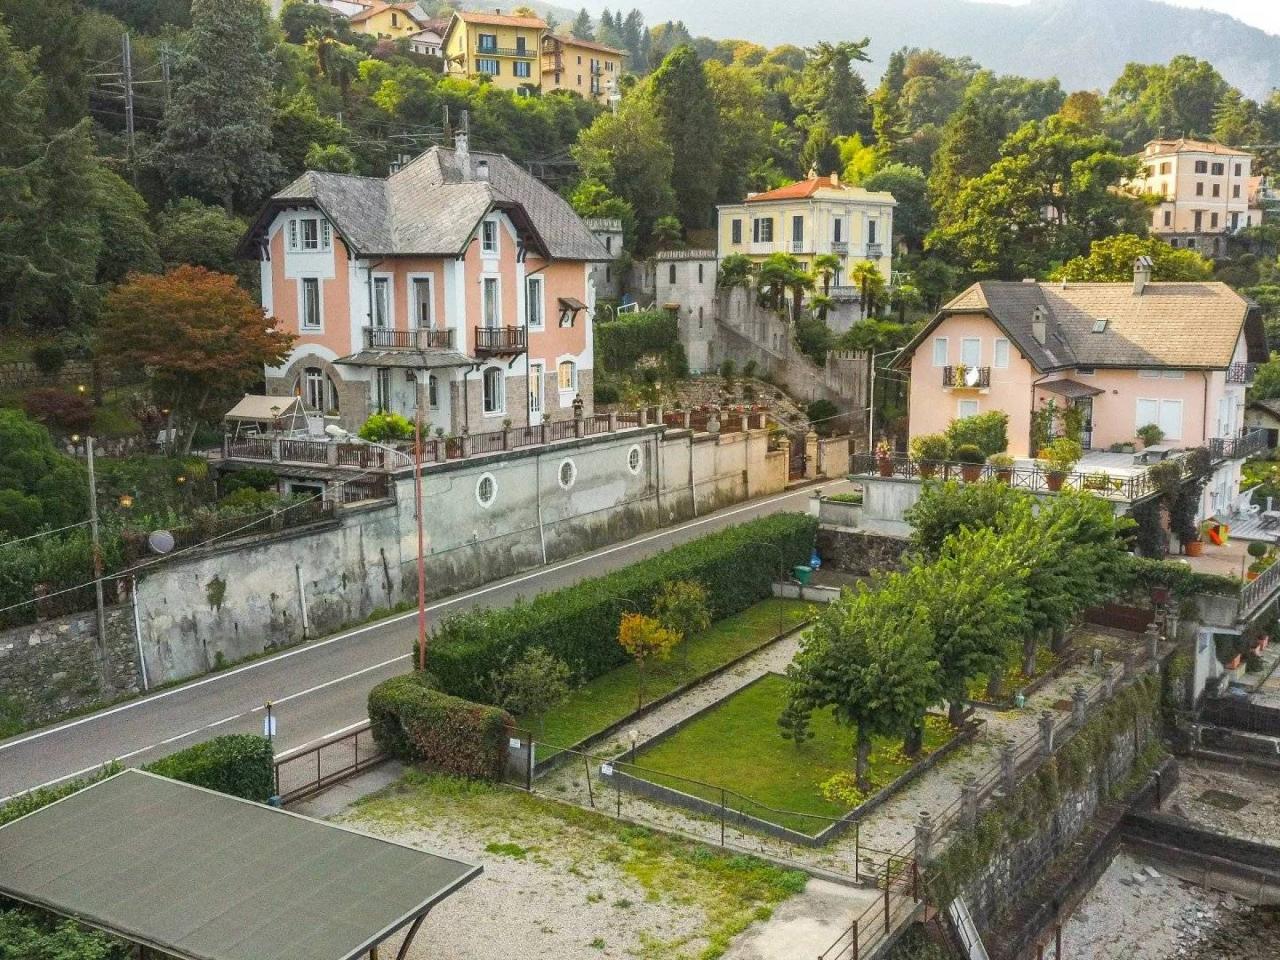 Villa in vendita a Baveno